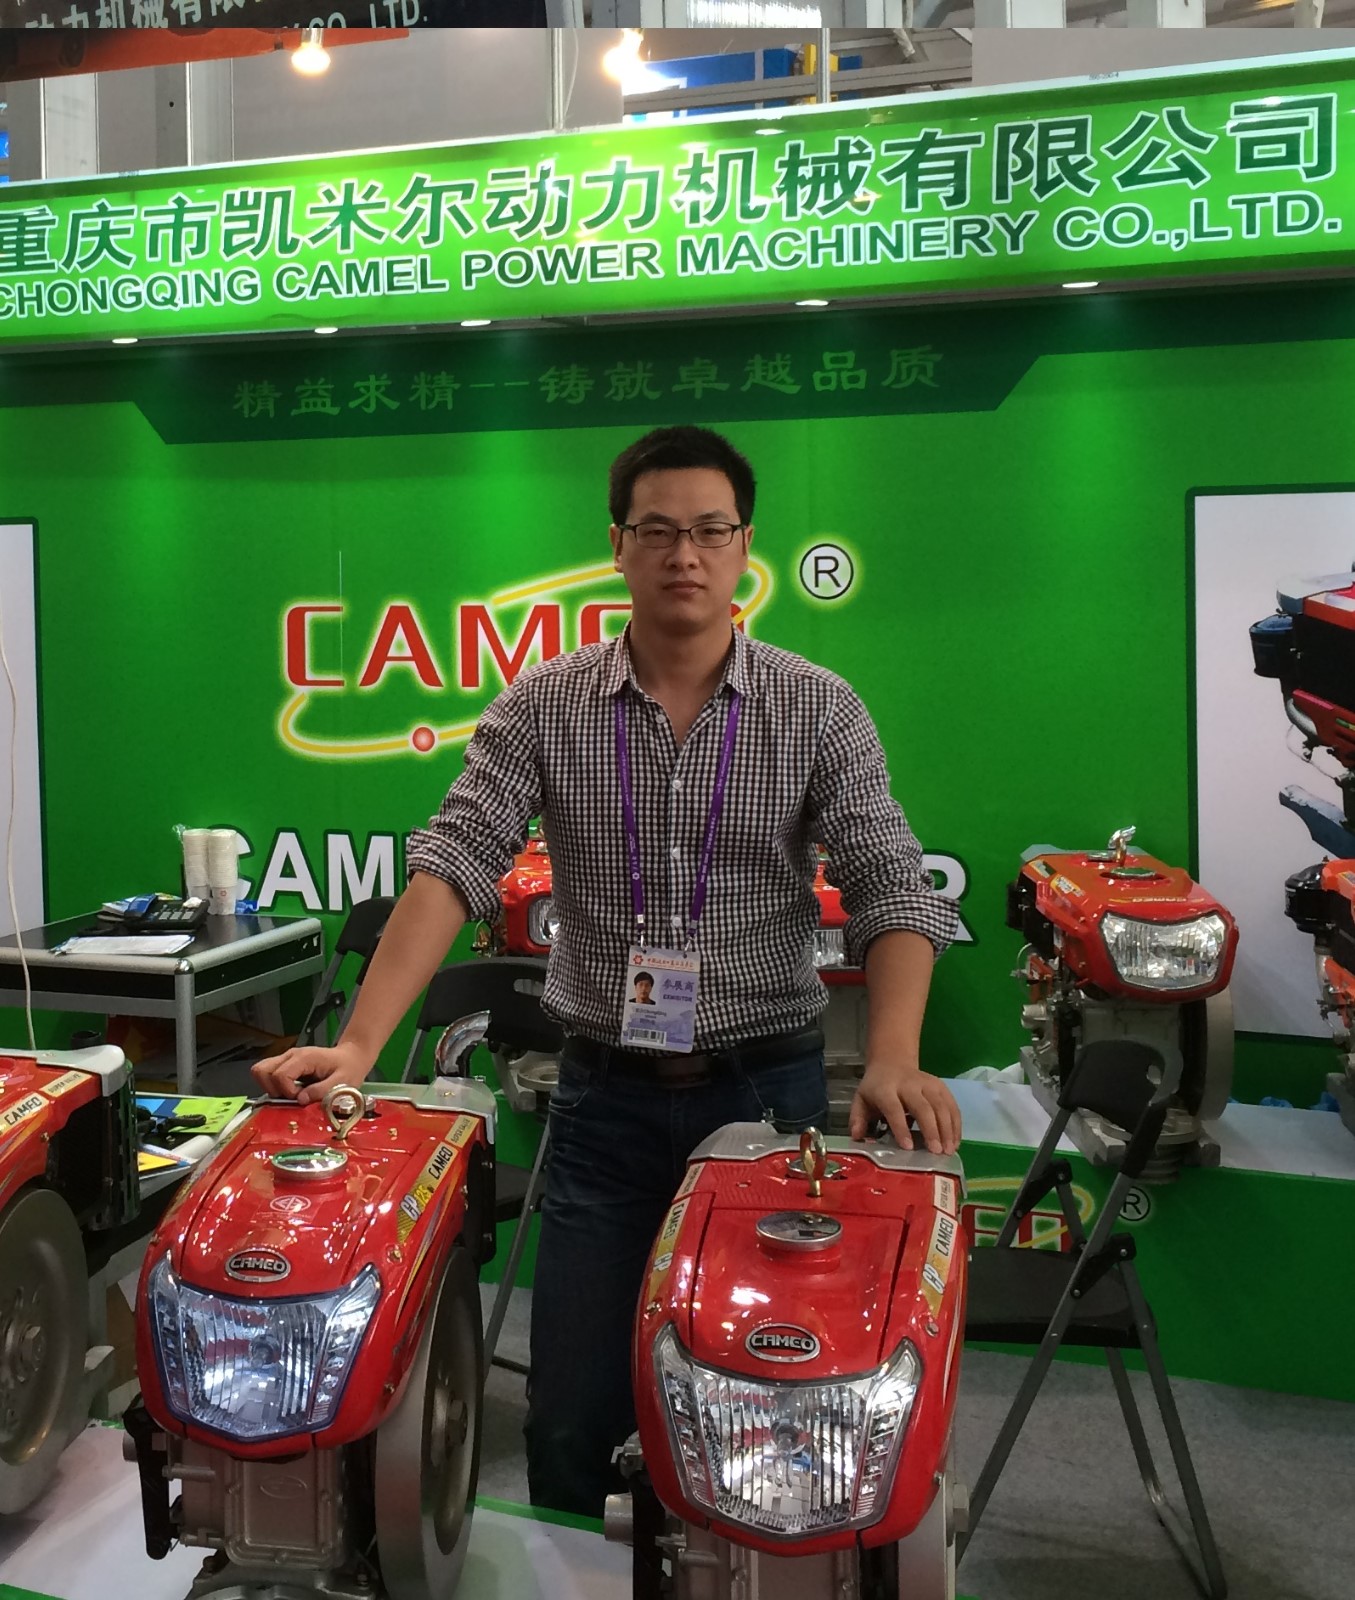 Chongqing Camel Power Machinery Co., Ltd.